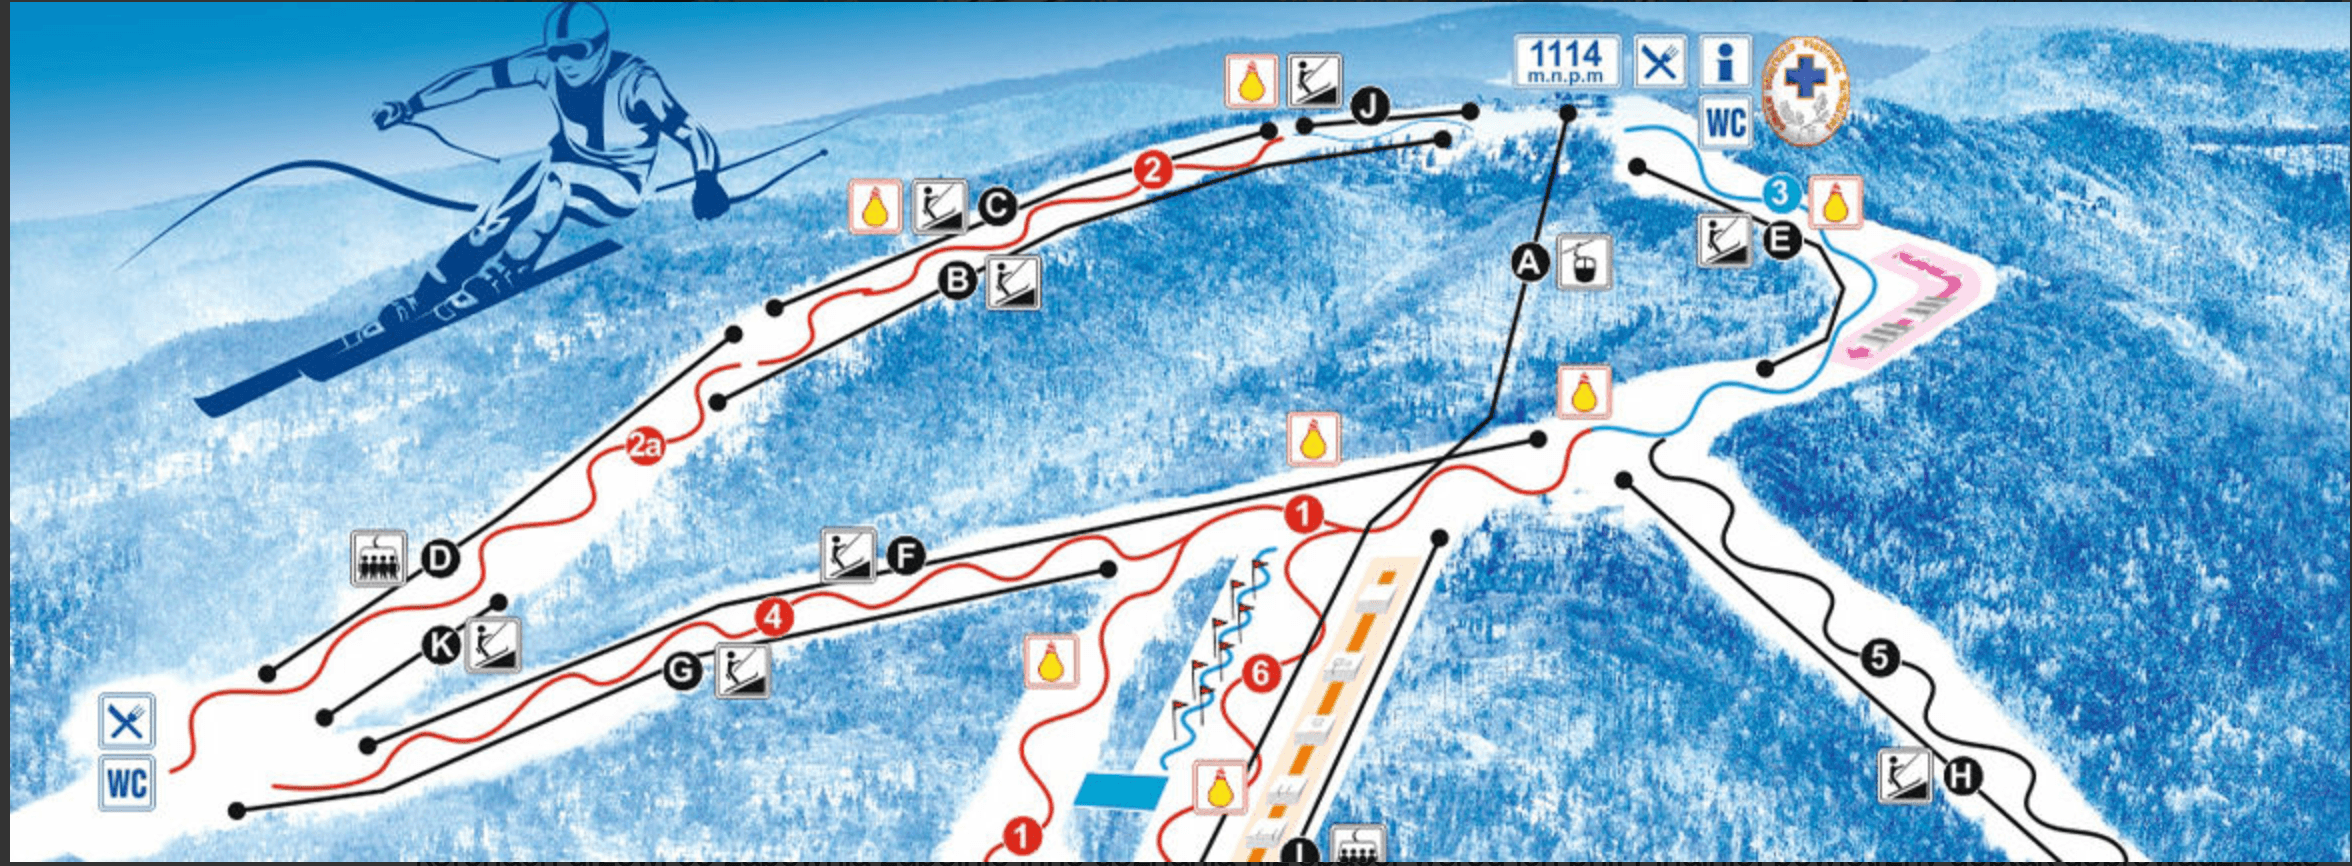 Jaworzyna Krynicka Ski Resort